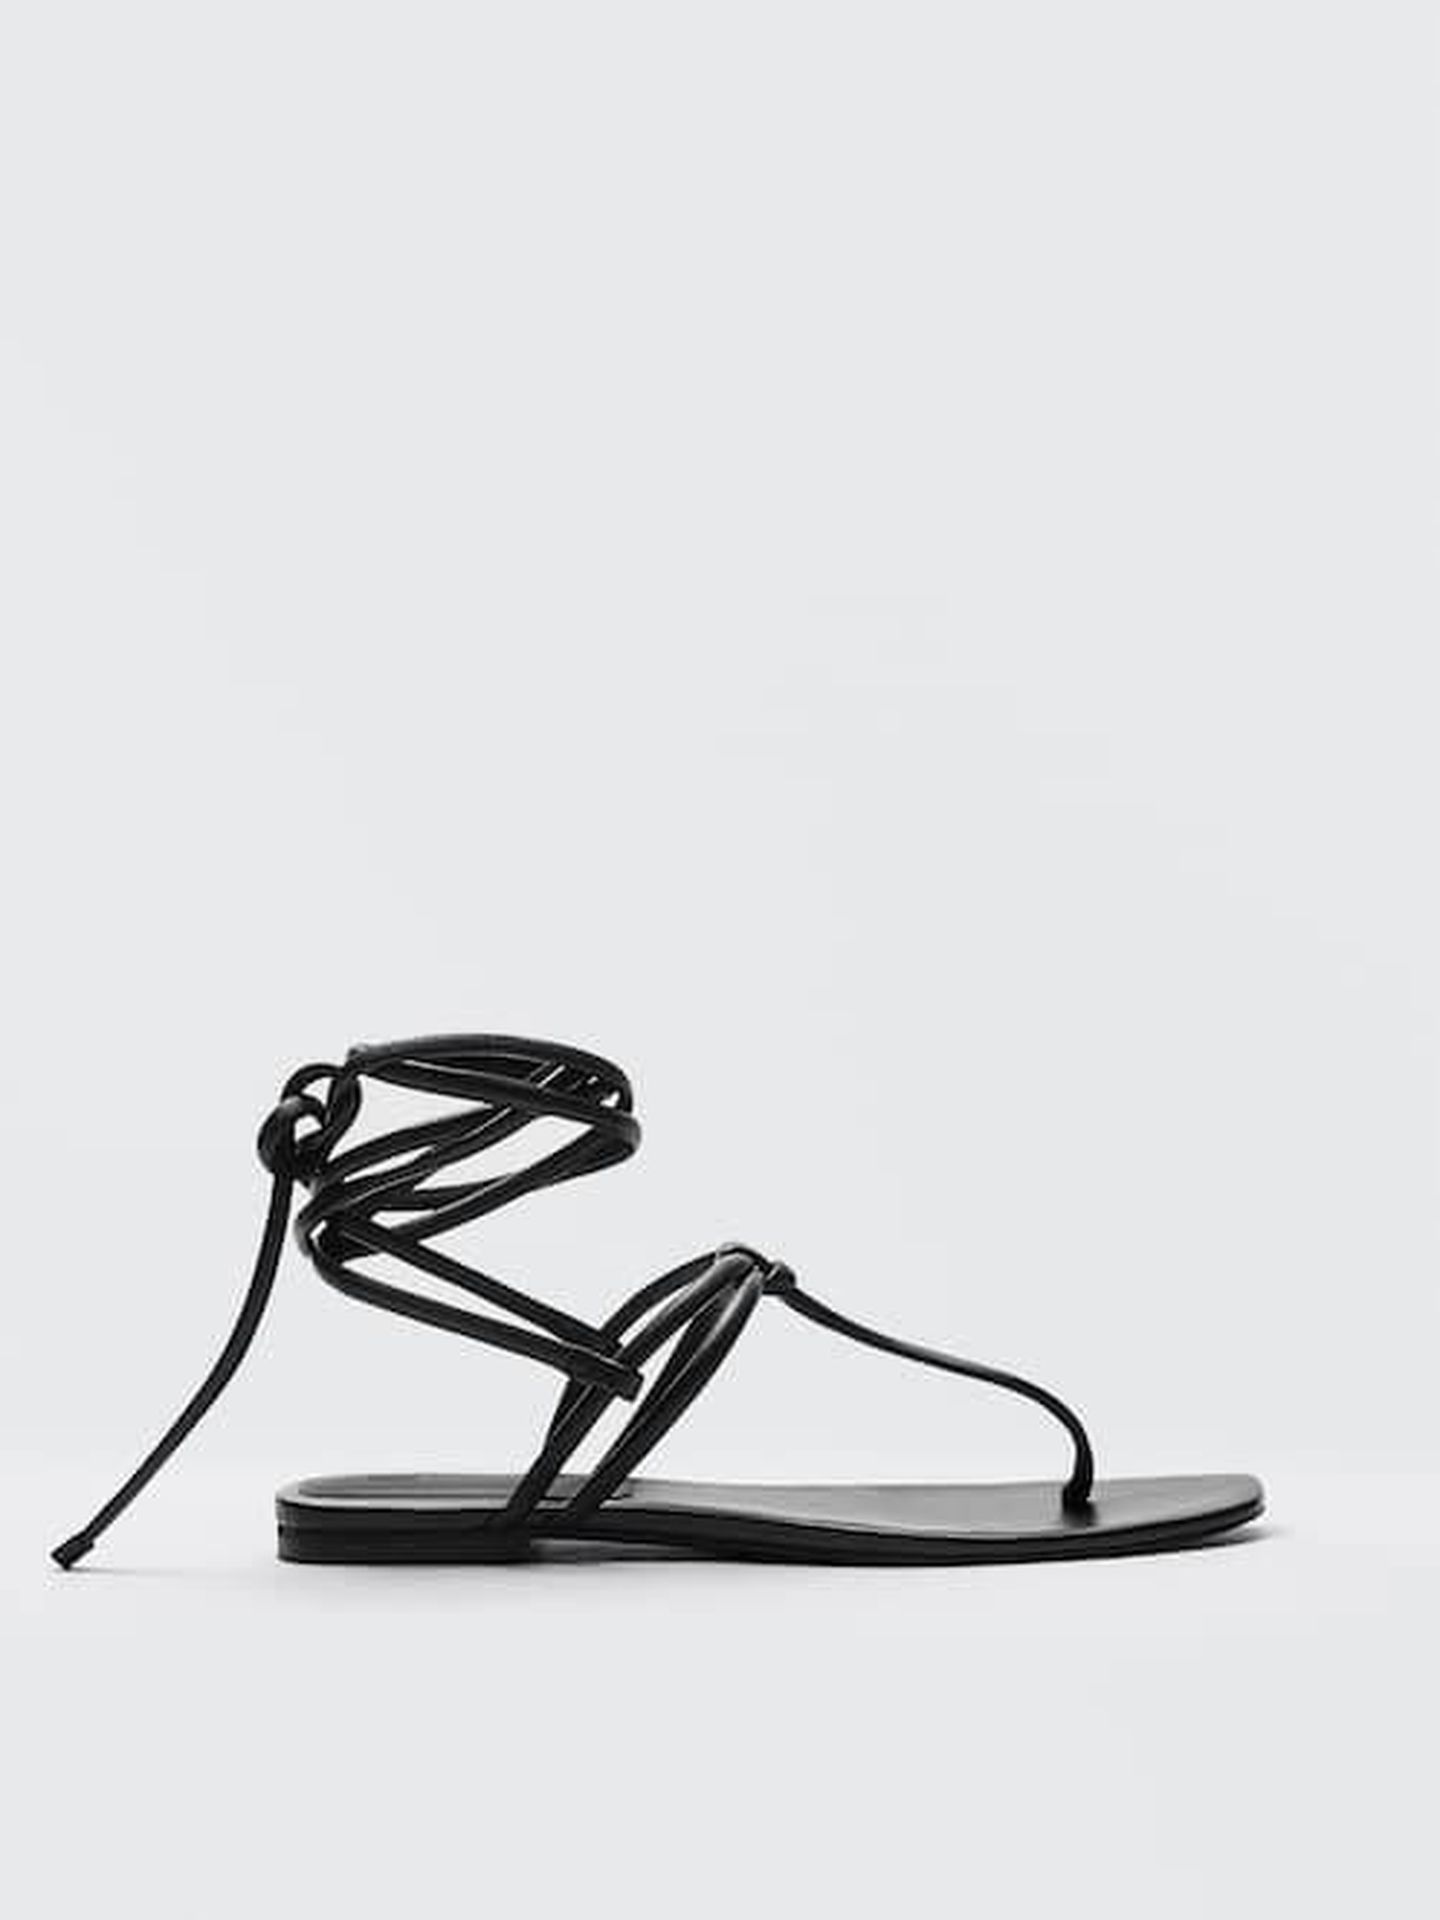 Sandalias negras, planas y de tendencia de Massimo Dutti. (Cortesía)